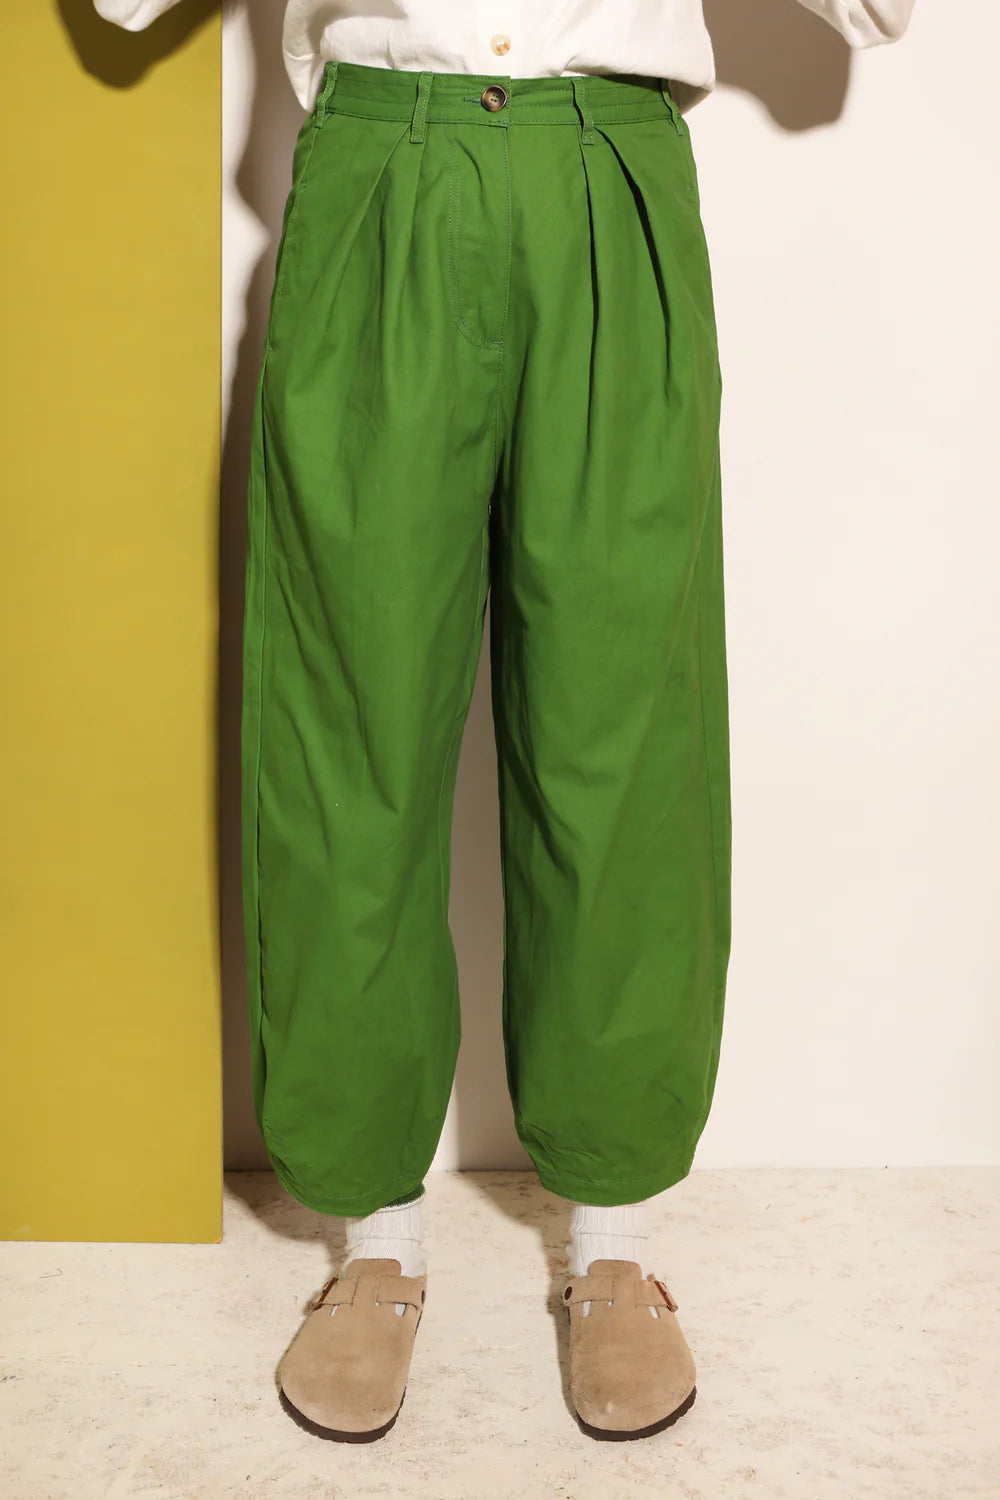 L.F. Markey Jenkin Trousers // Grass